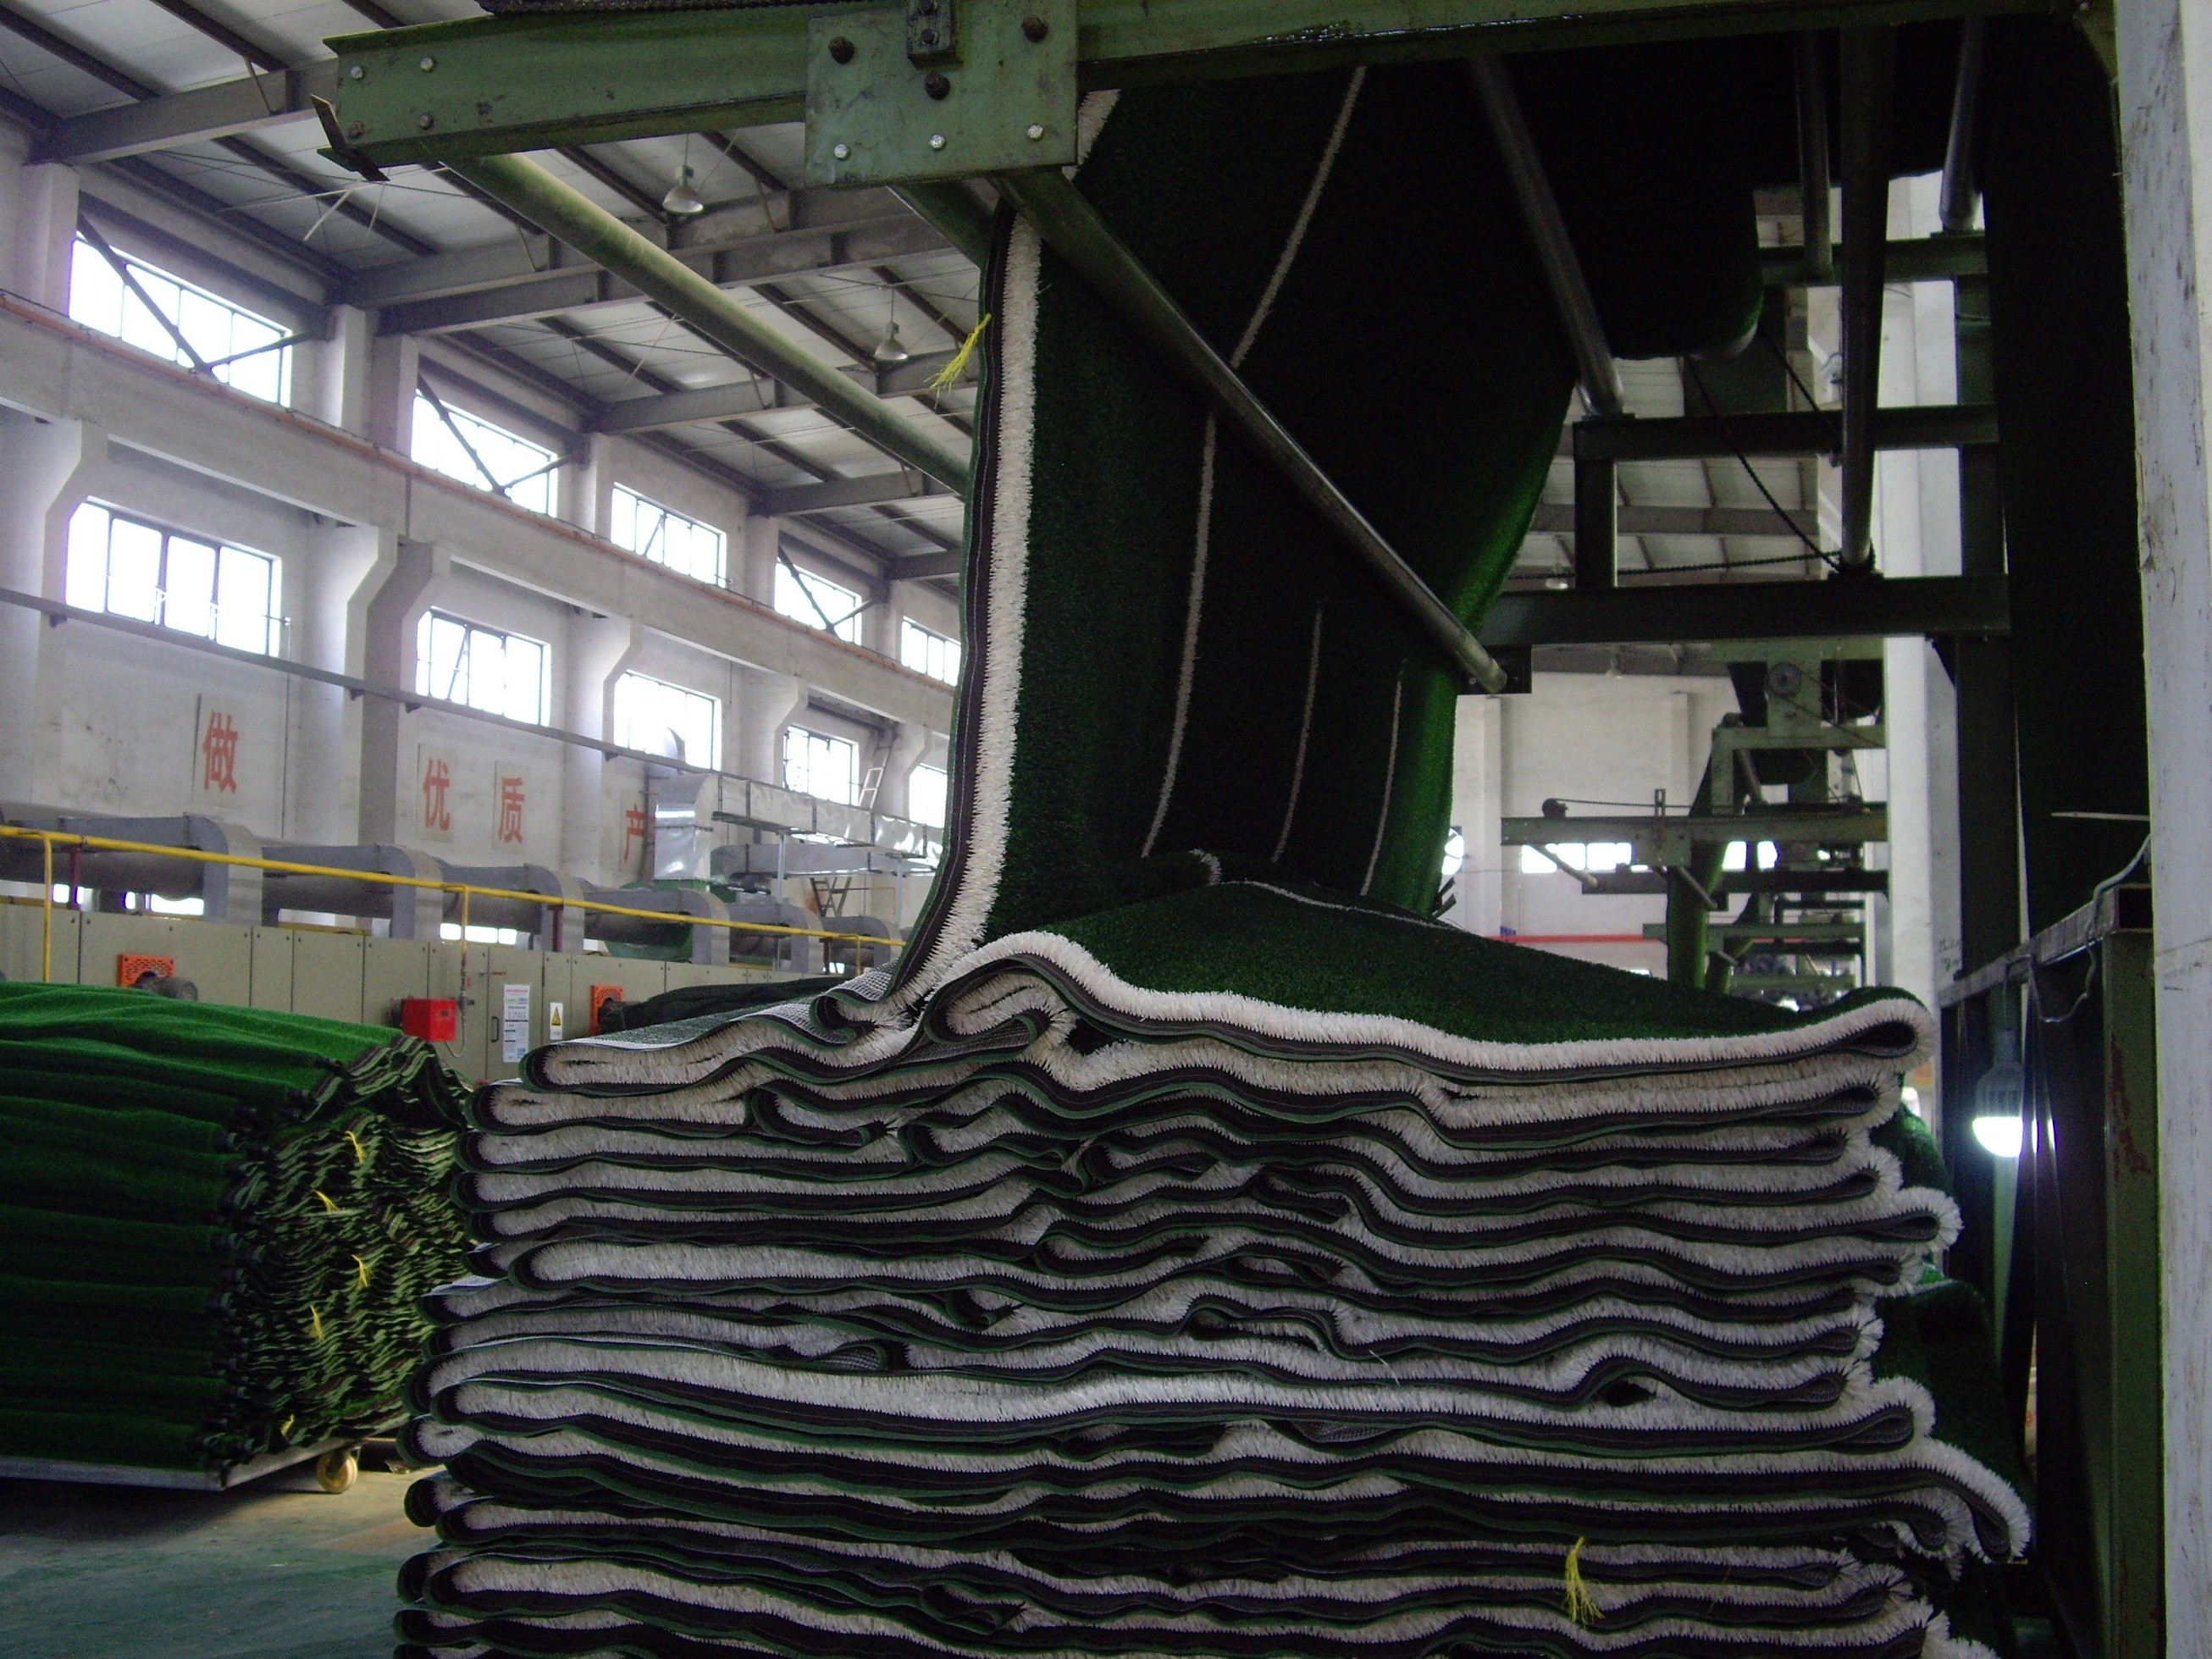 Wuxi Lvyin Artificial Turf Co., Ltd.